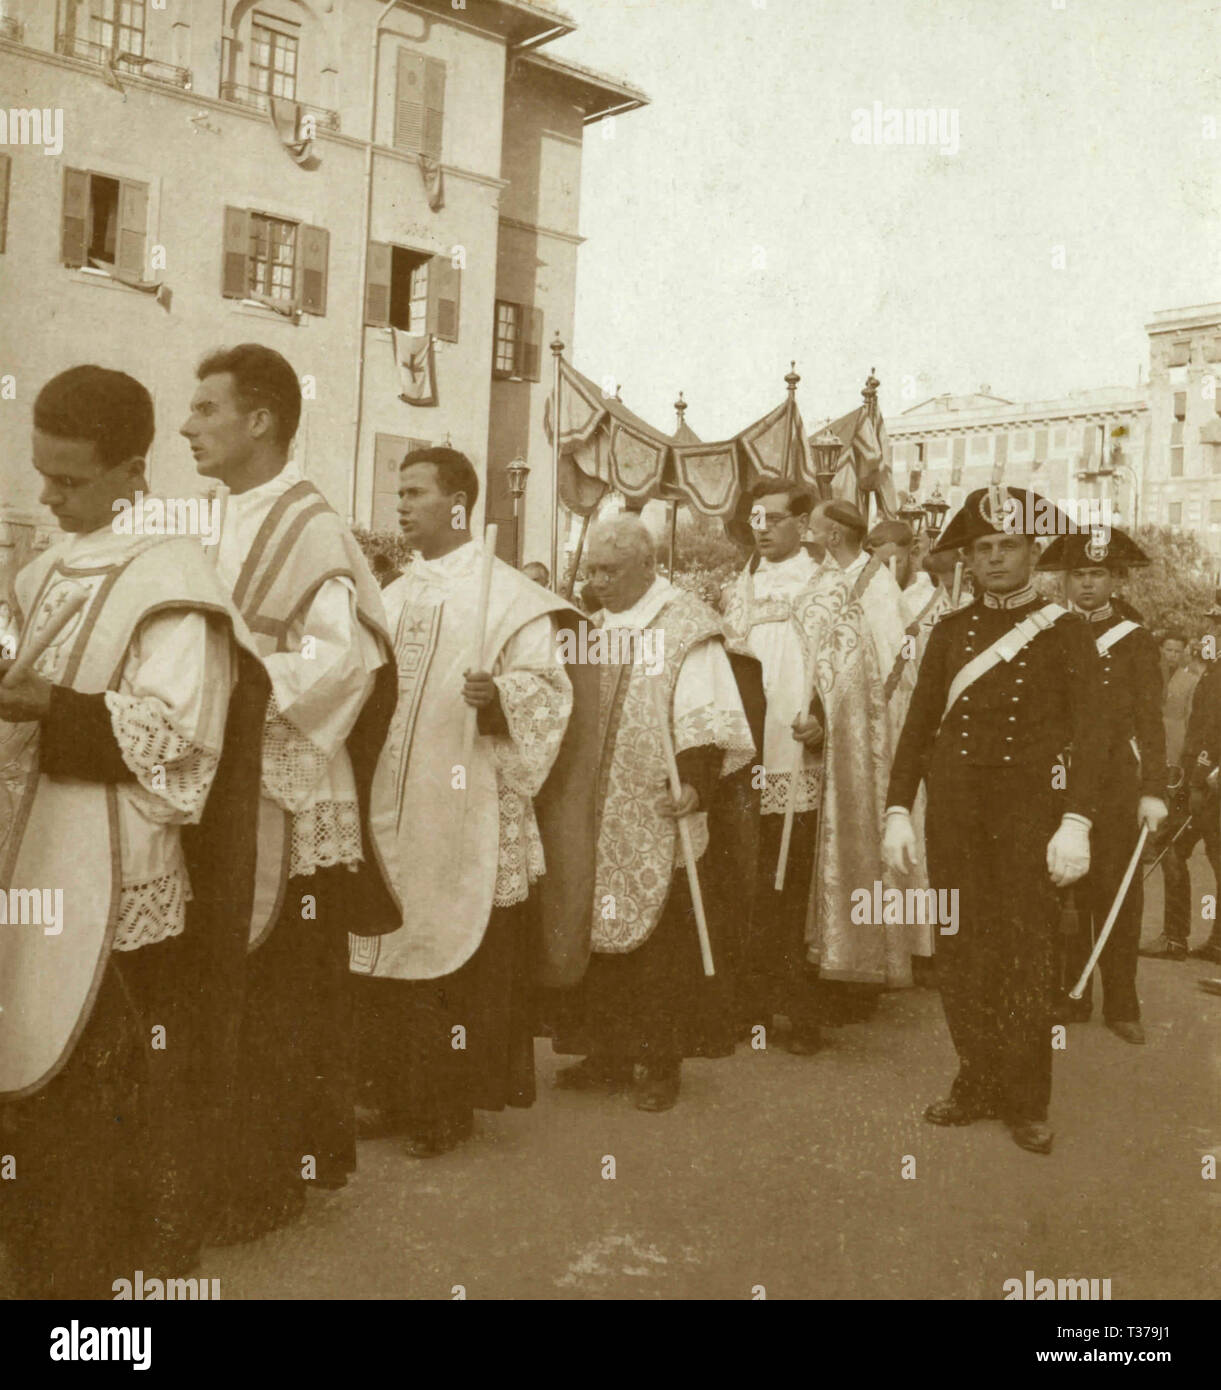 Les prêtres catholiques et les carabiniers au cours de la procession Cristo Re, Rome, Italie 1920 Banque D'Images